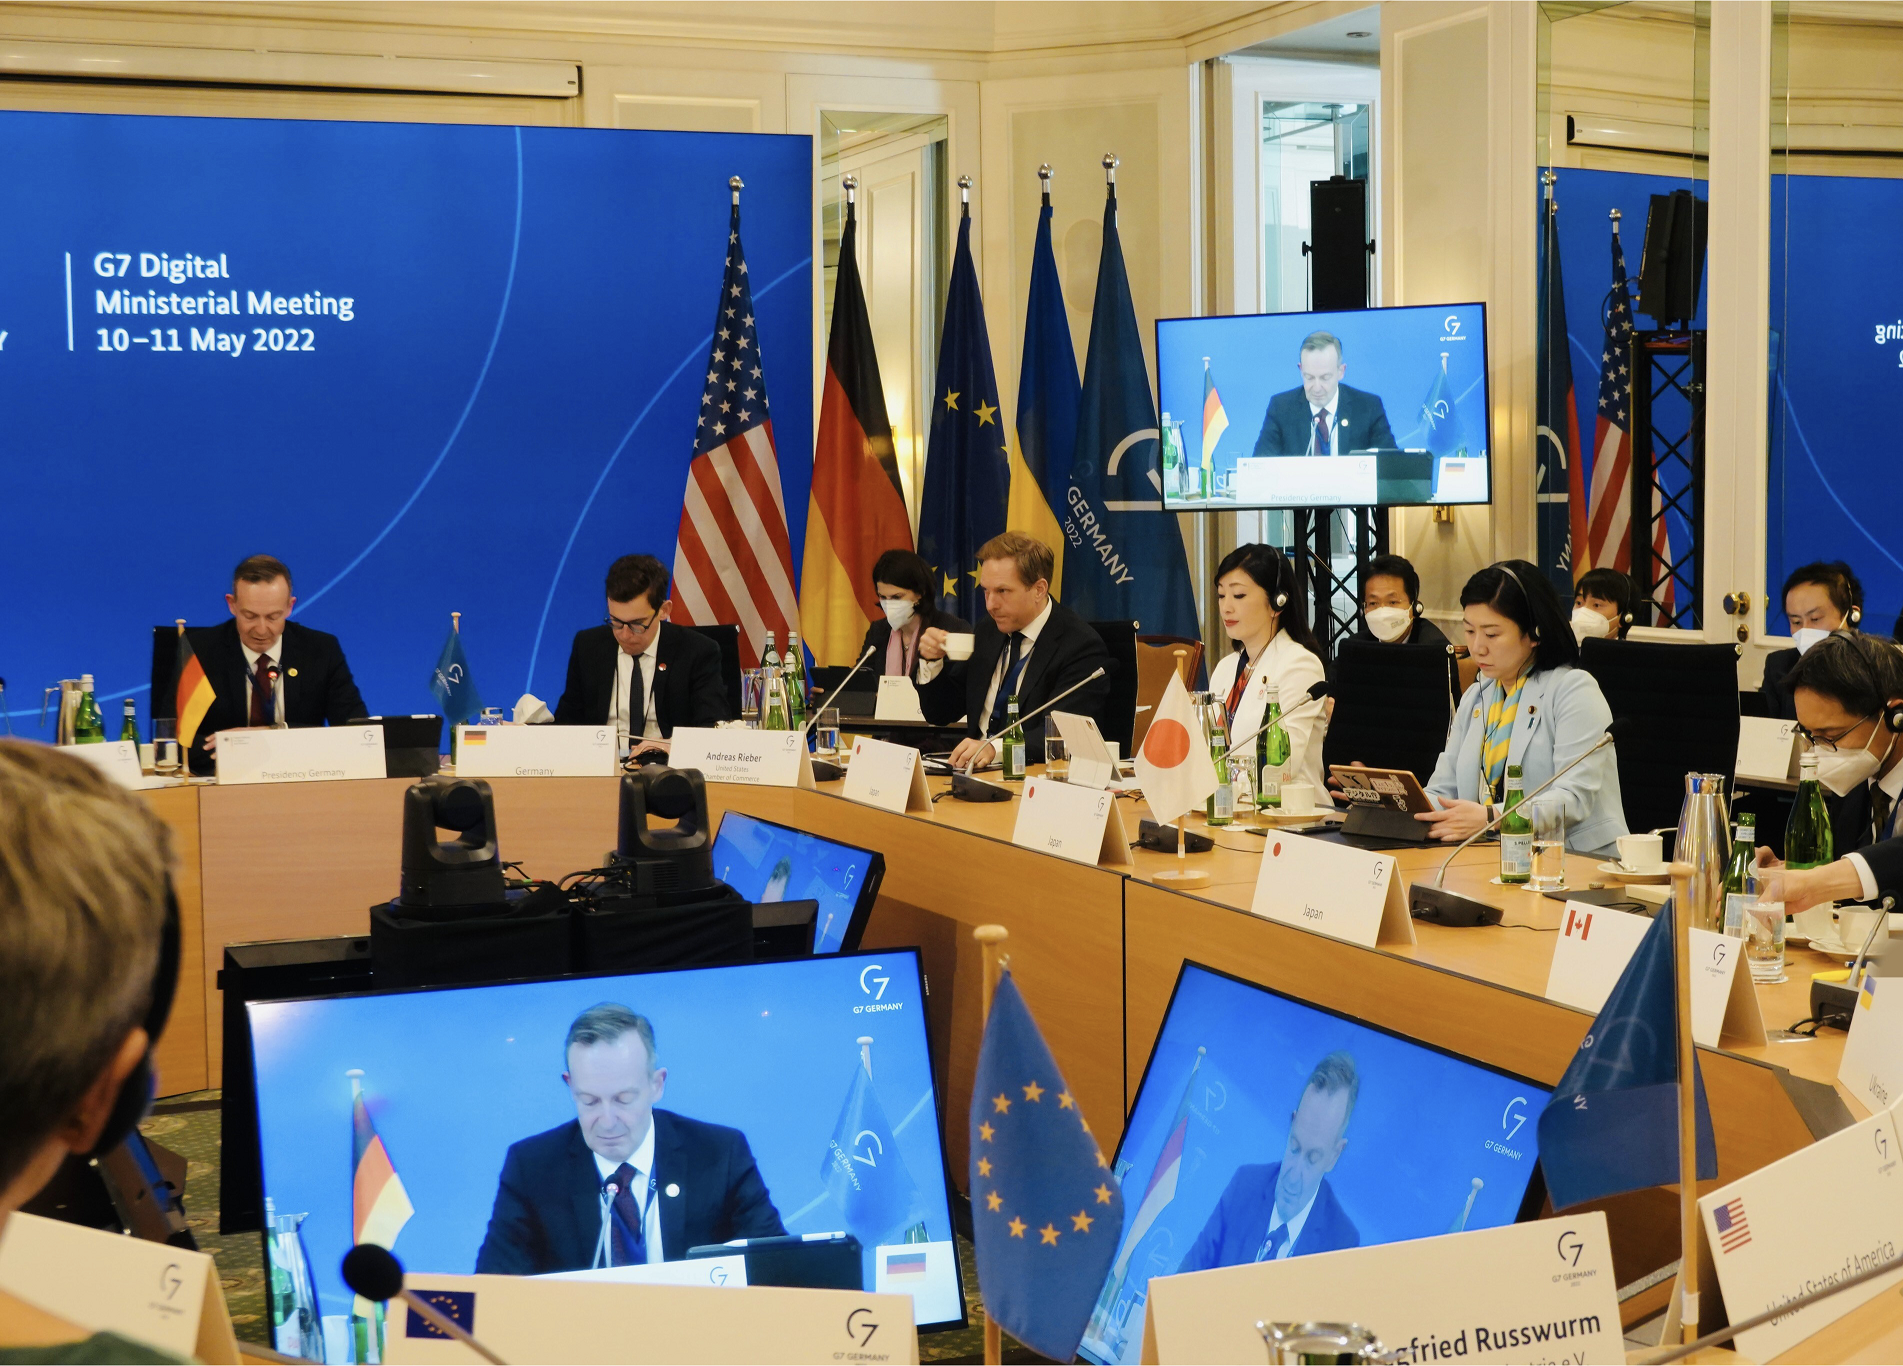 ドイツで開催されたG7デジタル大臣会合の様子。向かって右側の席に、デジタル大臣の姿が写っている。